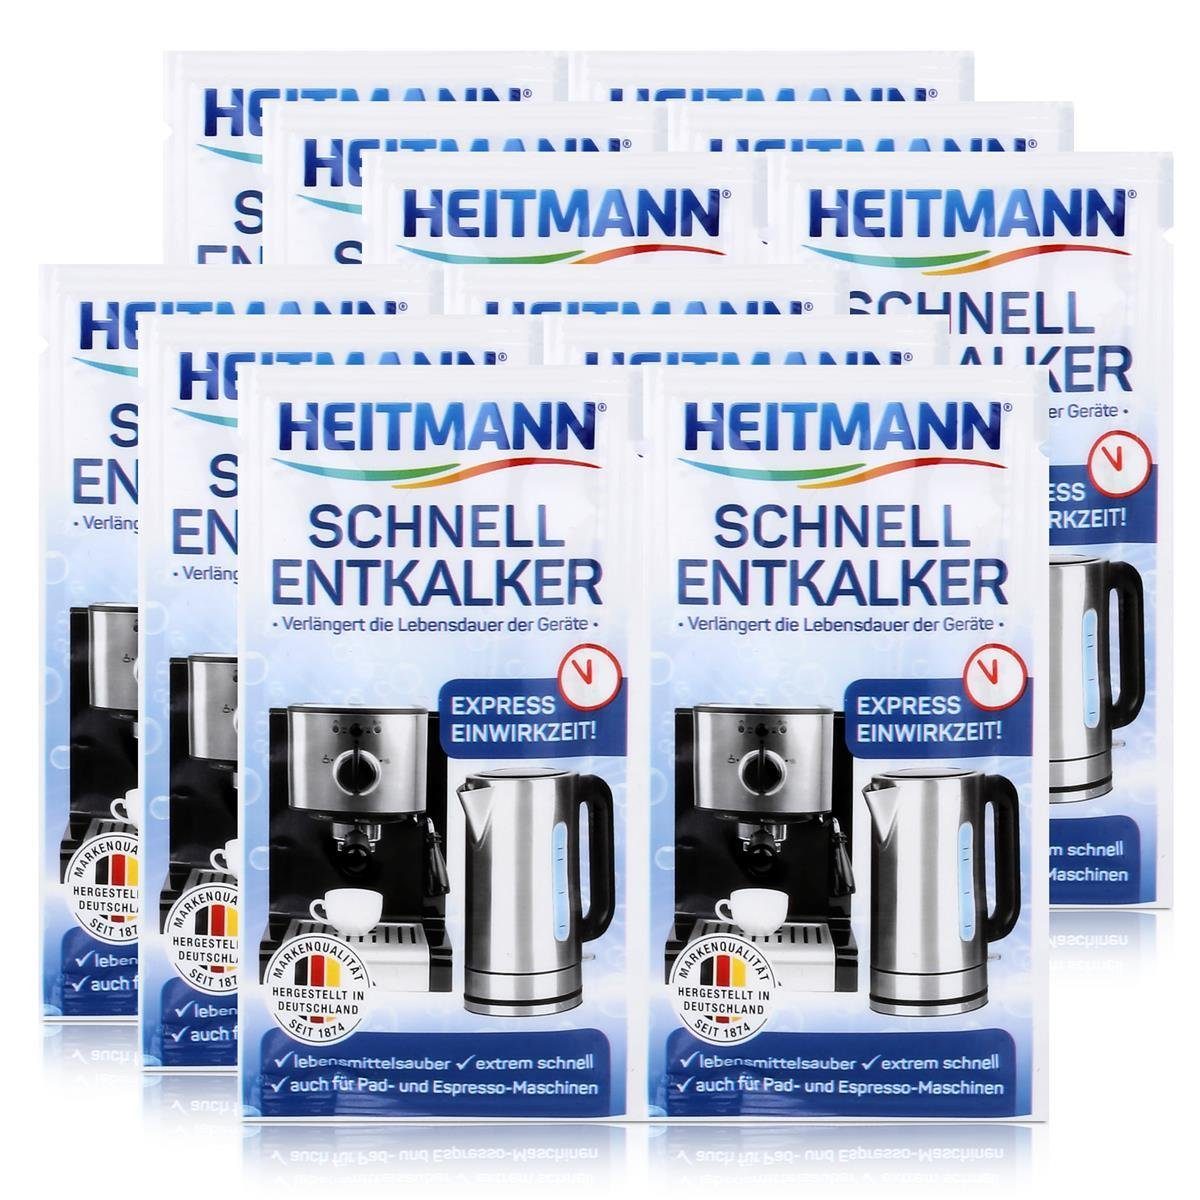 2x15g Heitmann Entkalker HEITMANN Schnell-Entkalker - (6er Universalentkalker Natürlicher